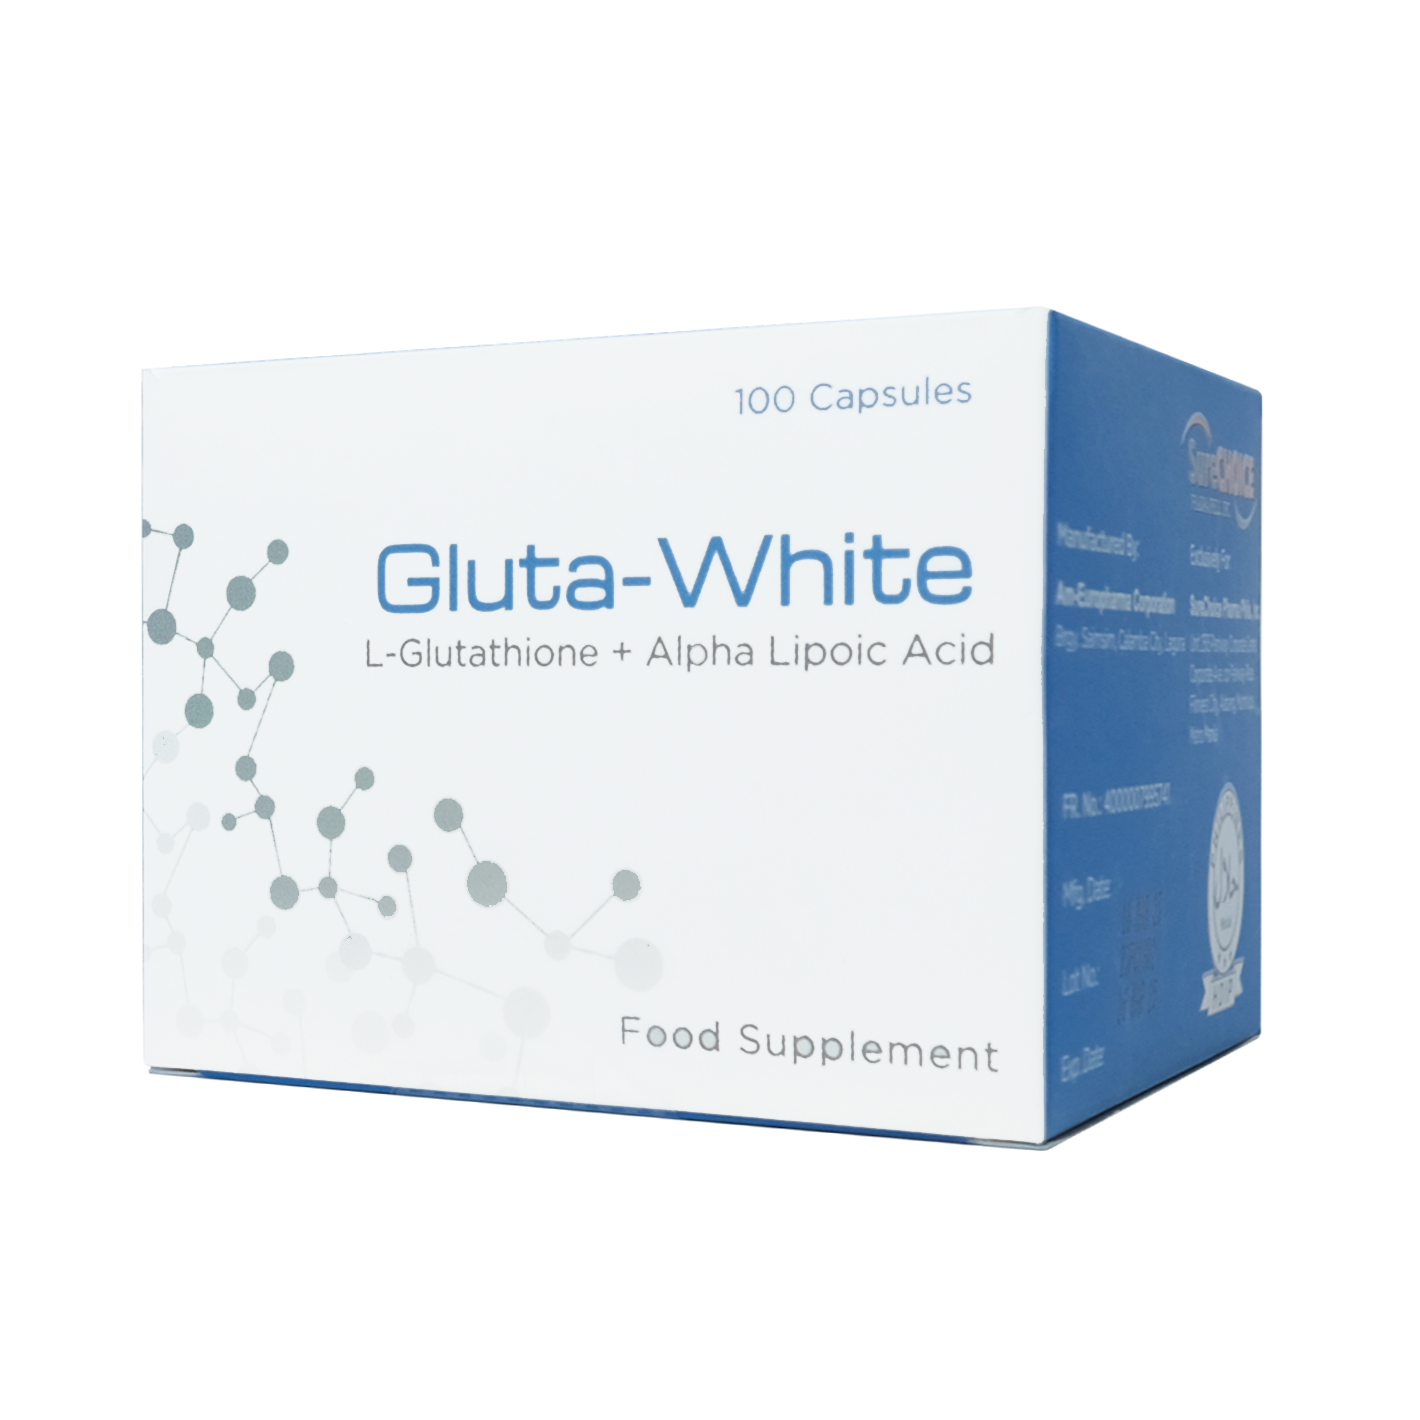 Gluta-White